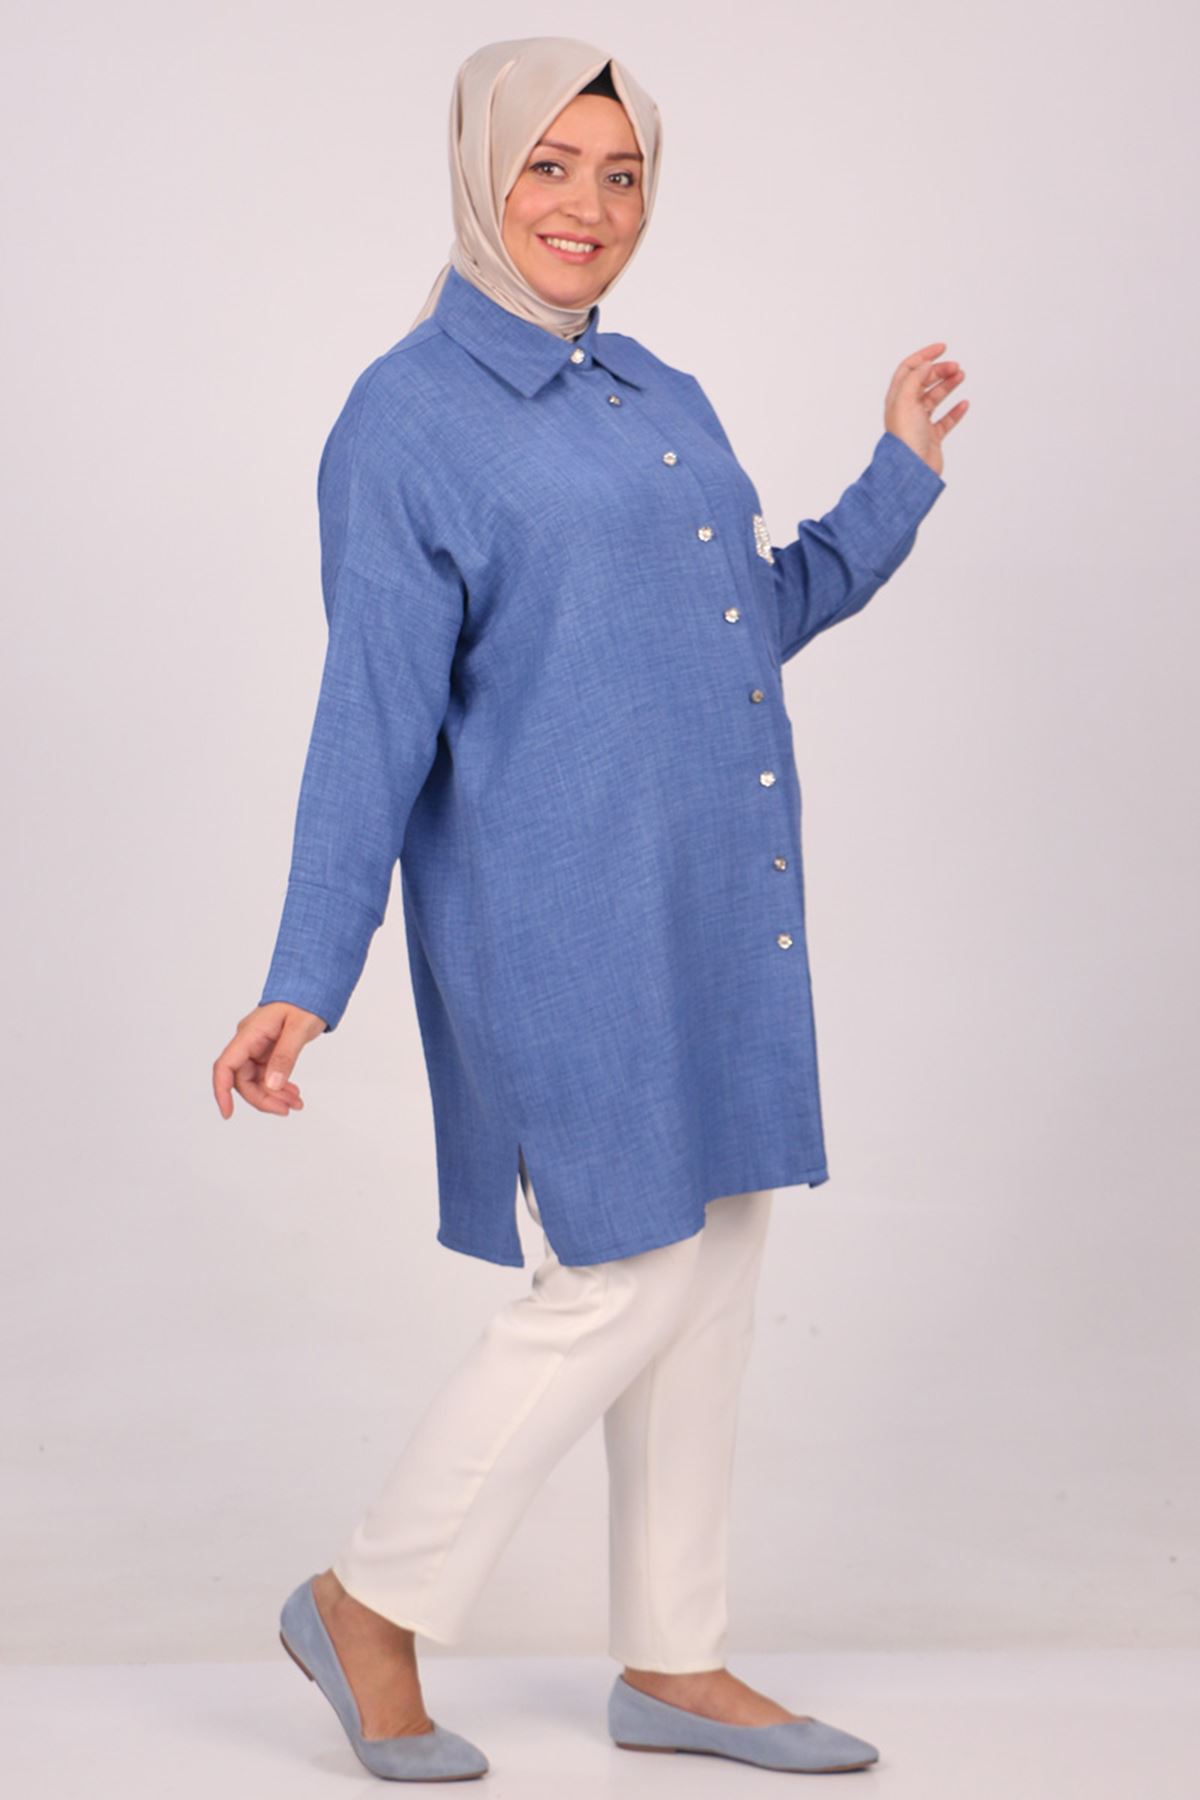 38112 Large Size Linen Airobin Shirt with Pocket Stone - Indigo